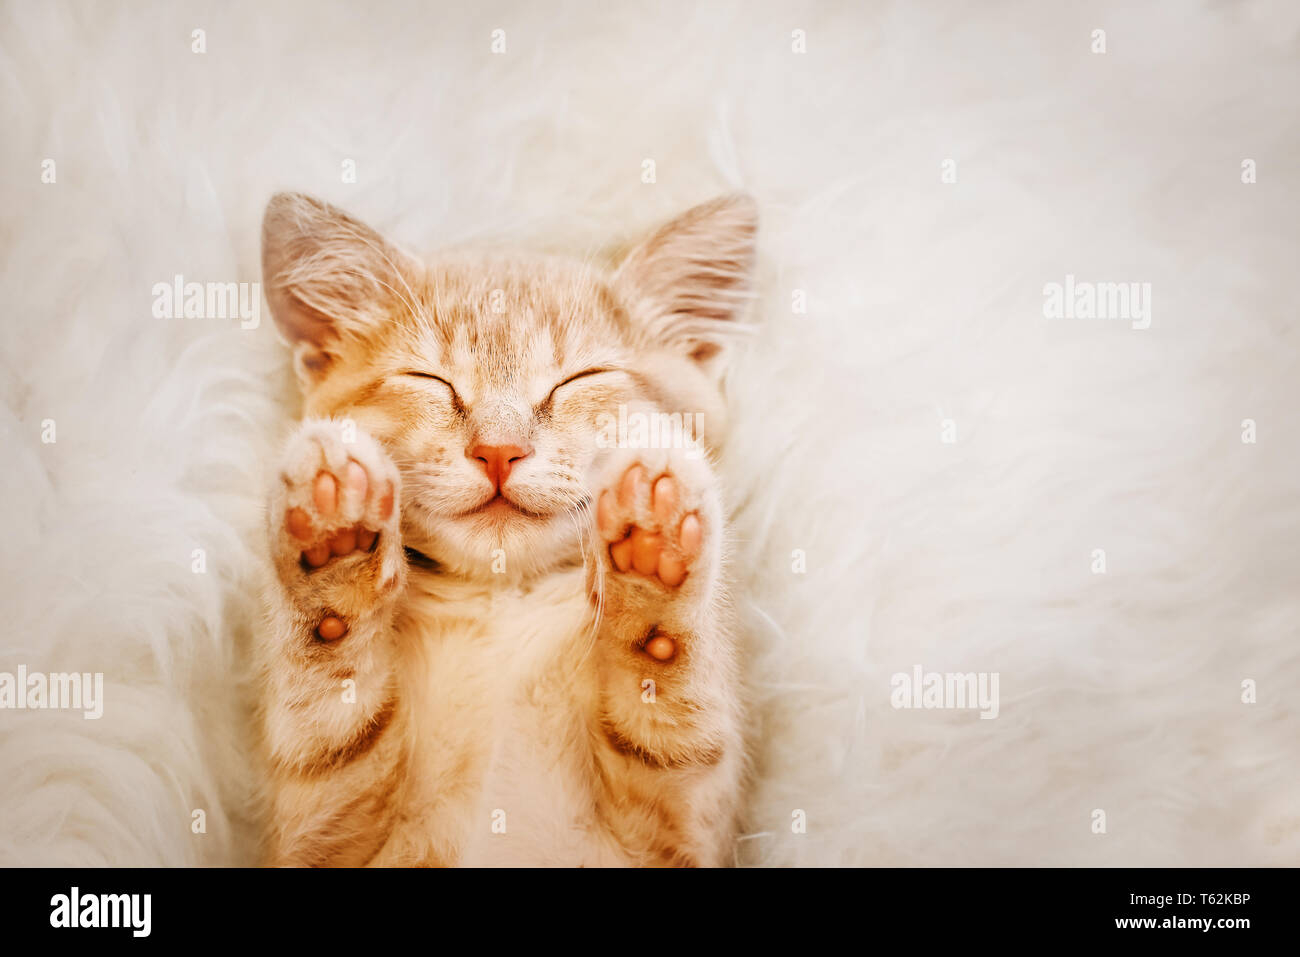 Lindo gatito rojo, está durmiendo en la espalda y sonriendo, patas arriba. Concepto de sueño y de buena mañana. Foto de stock